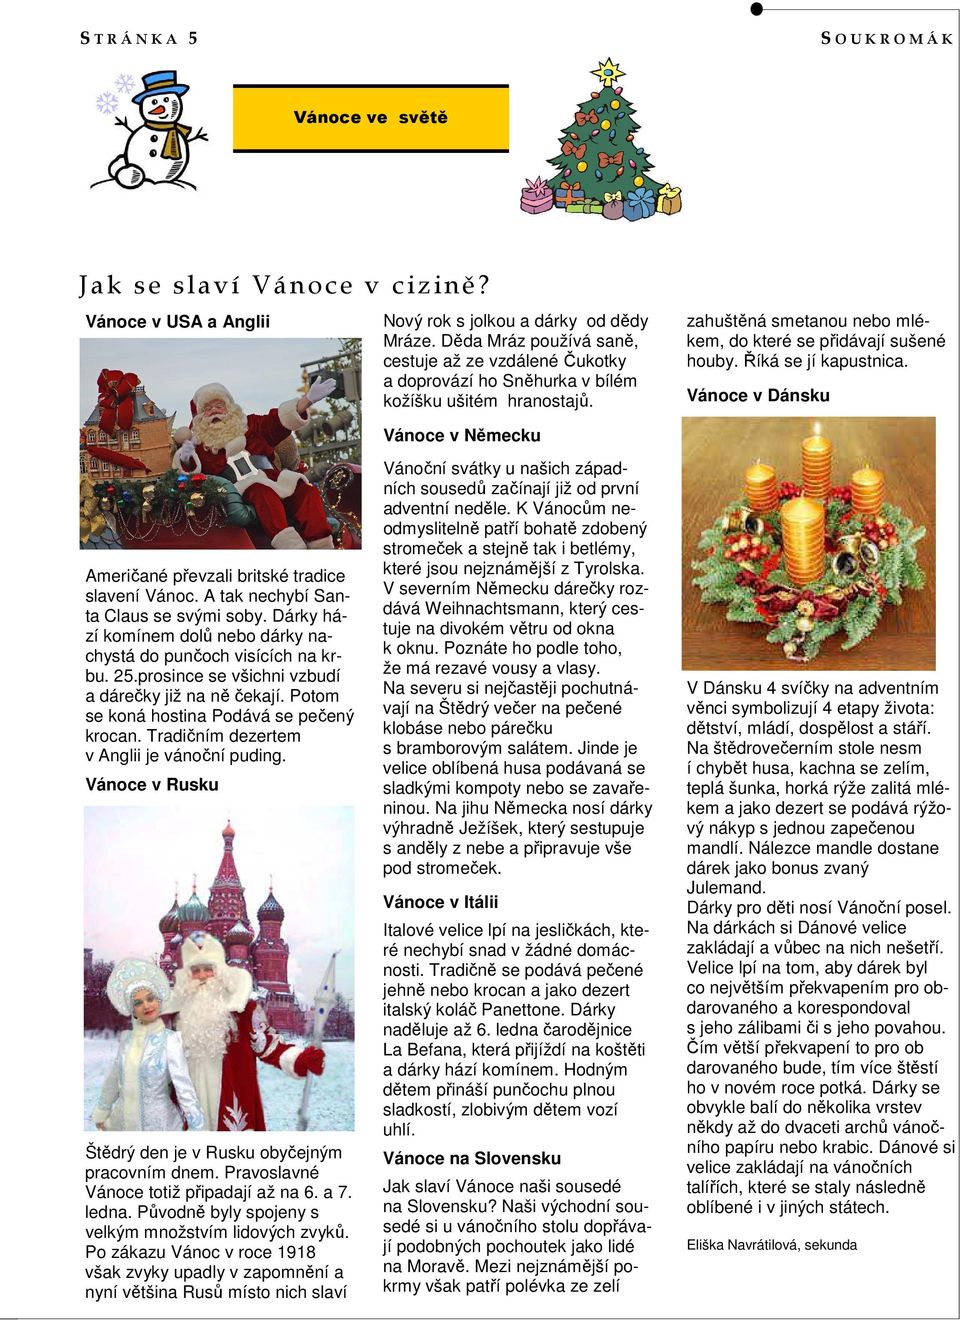 Říká se jí kapustnica. Vánoce v Dánsku Američané převzali britské tradice slavení Vánoc. A tak nechybí Santa Claus se svými soby.